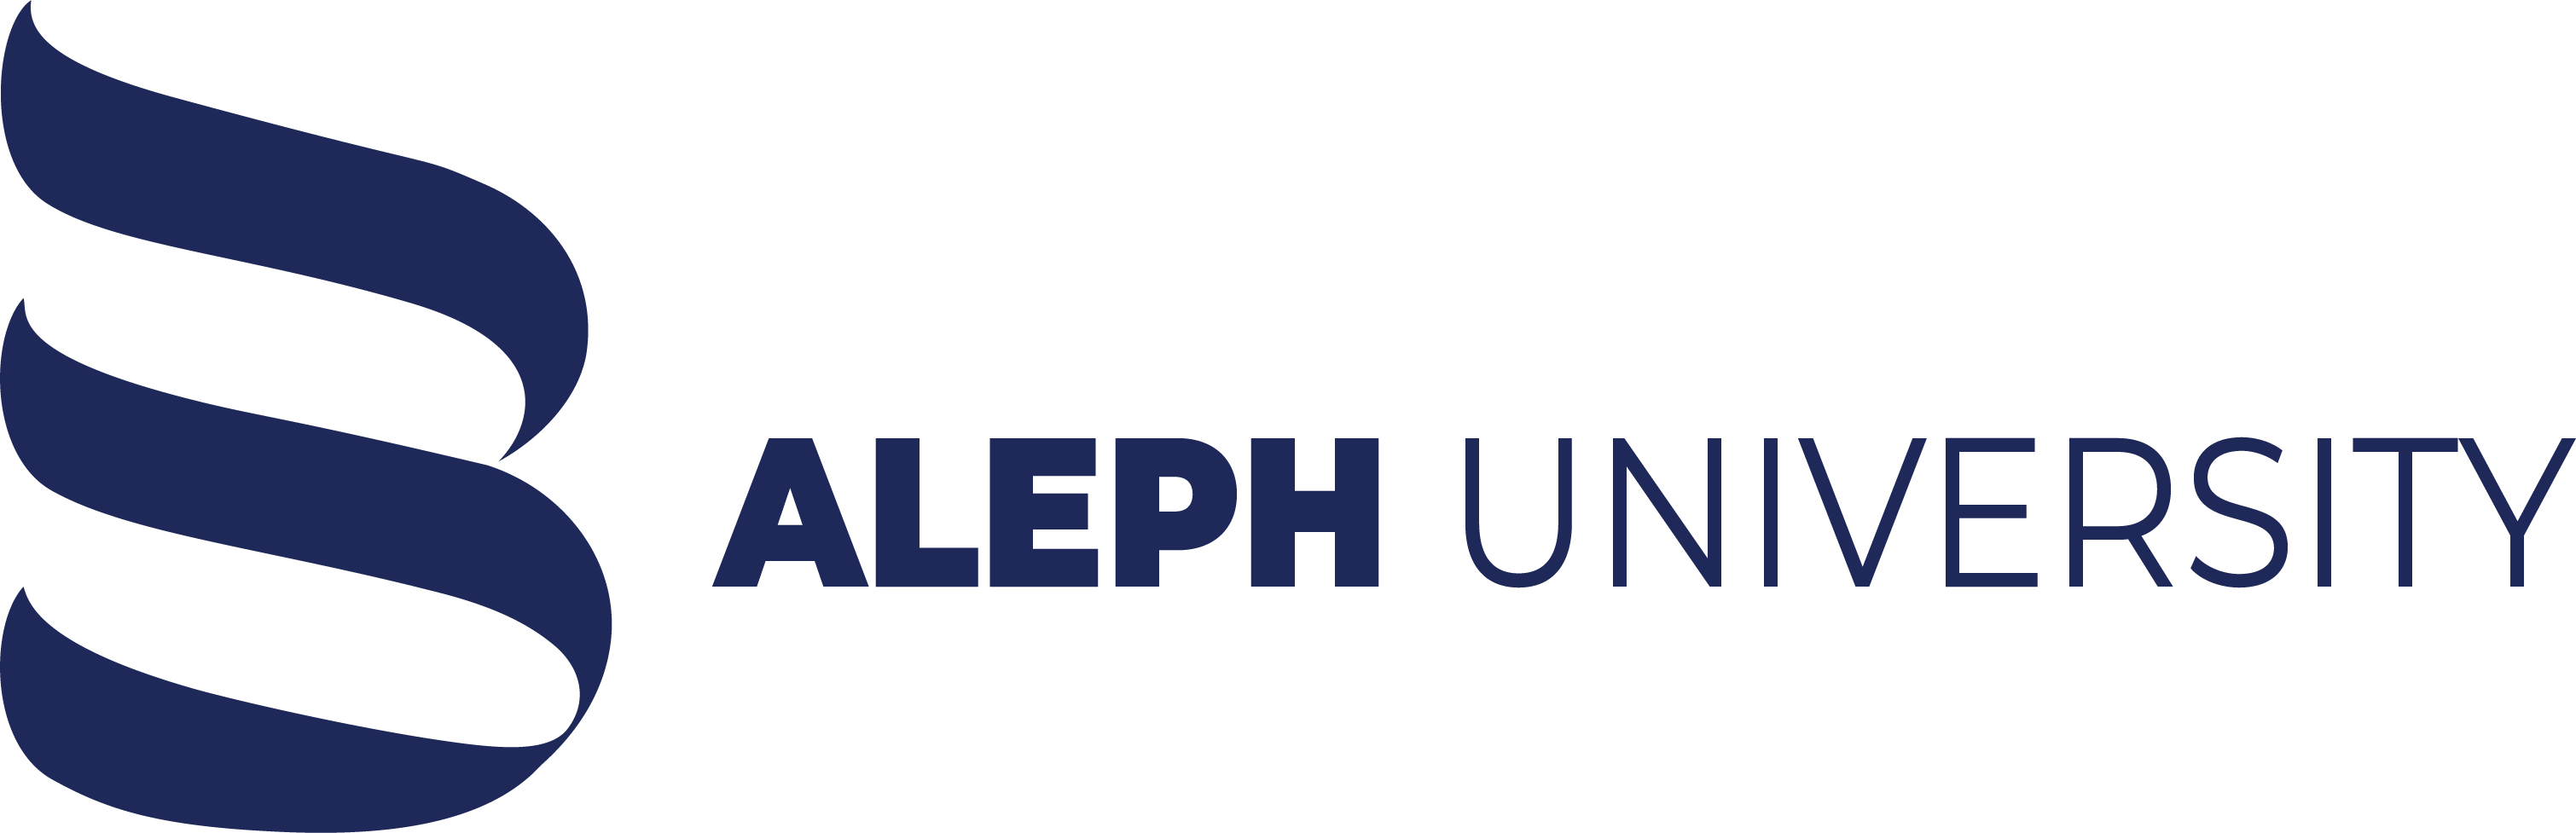 ALEPH UNIVERSITY